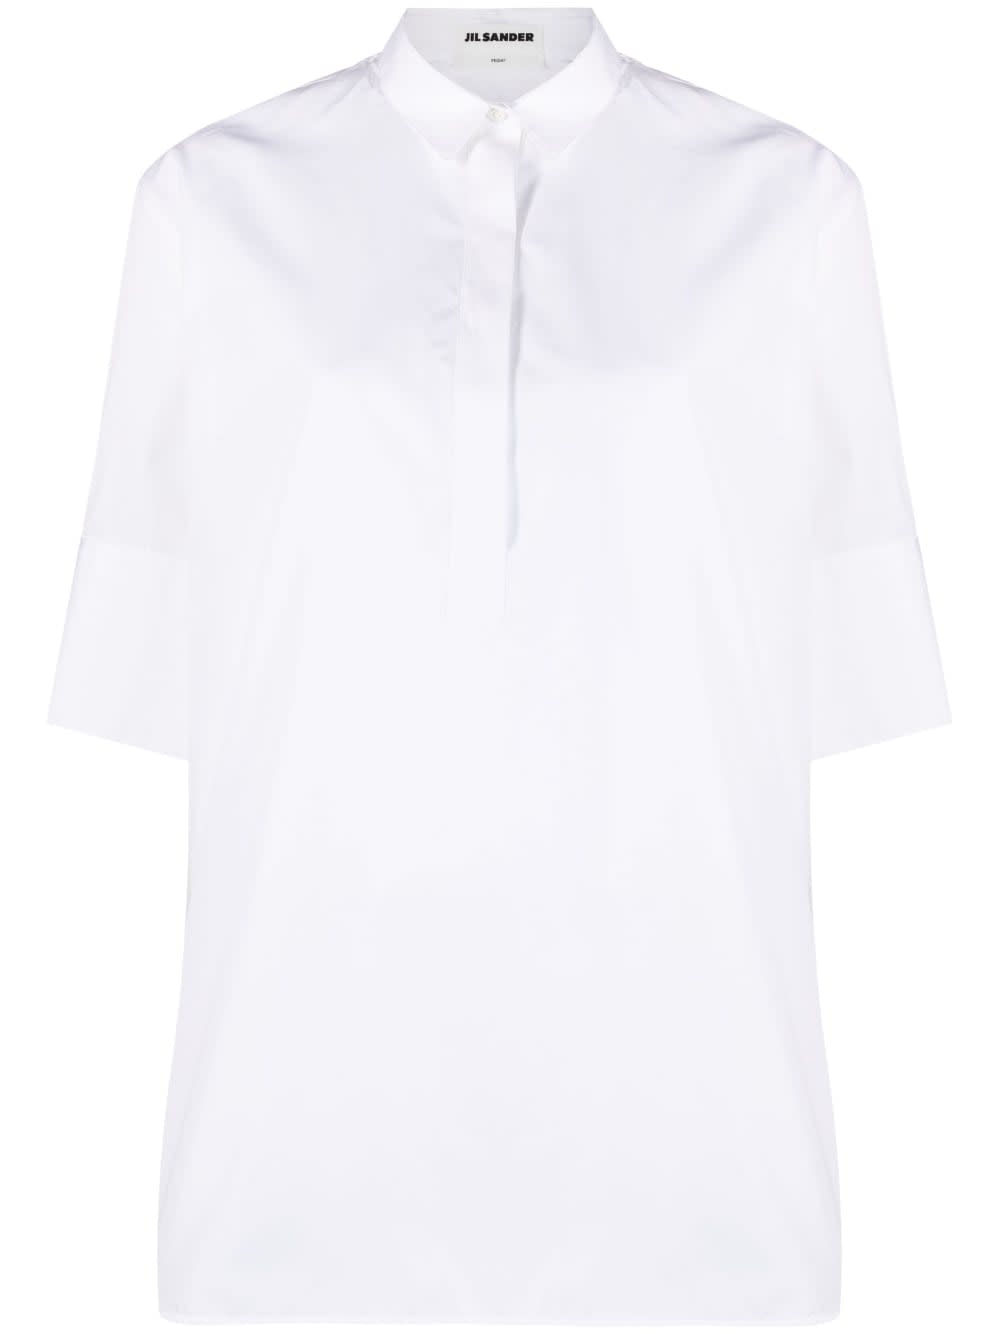 Shop Jil Sander Buttoned Poplin Shirt